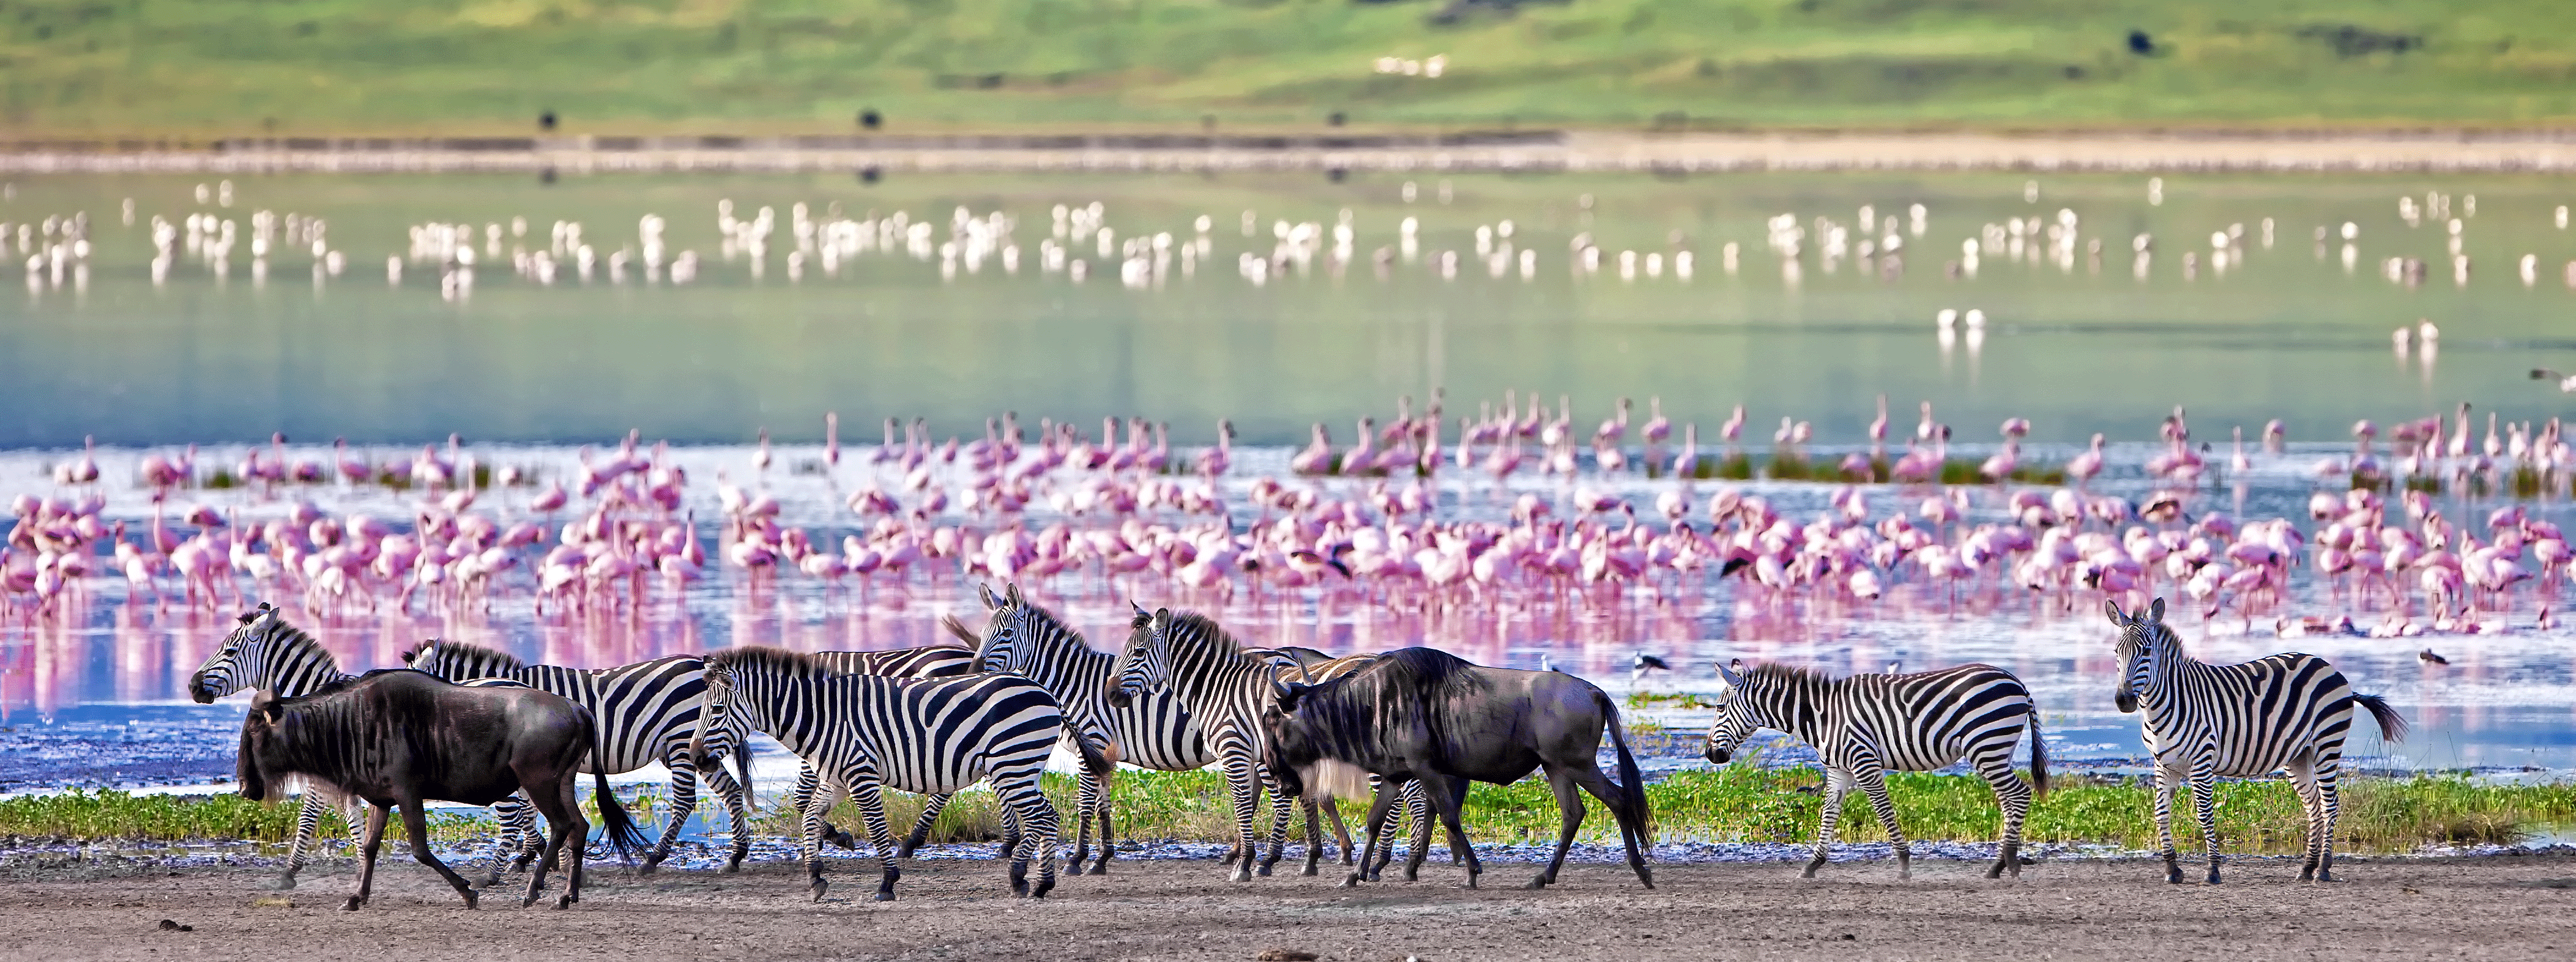 /resource/Images/africa/tanzania/headerimage/Ngorongoro-Crater-Tanzania-flamingos1.png